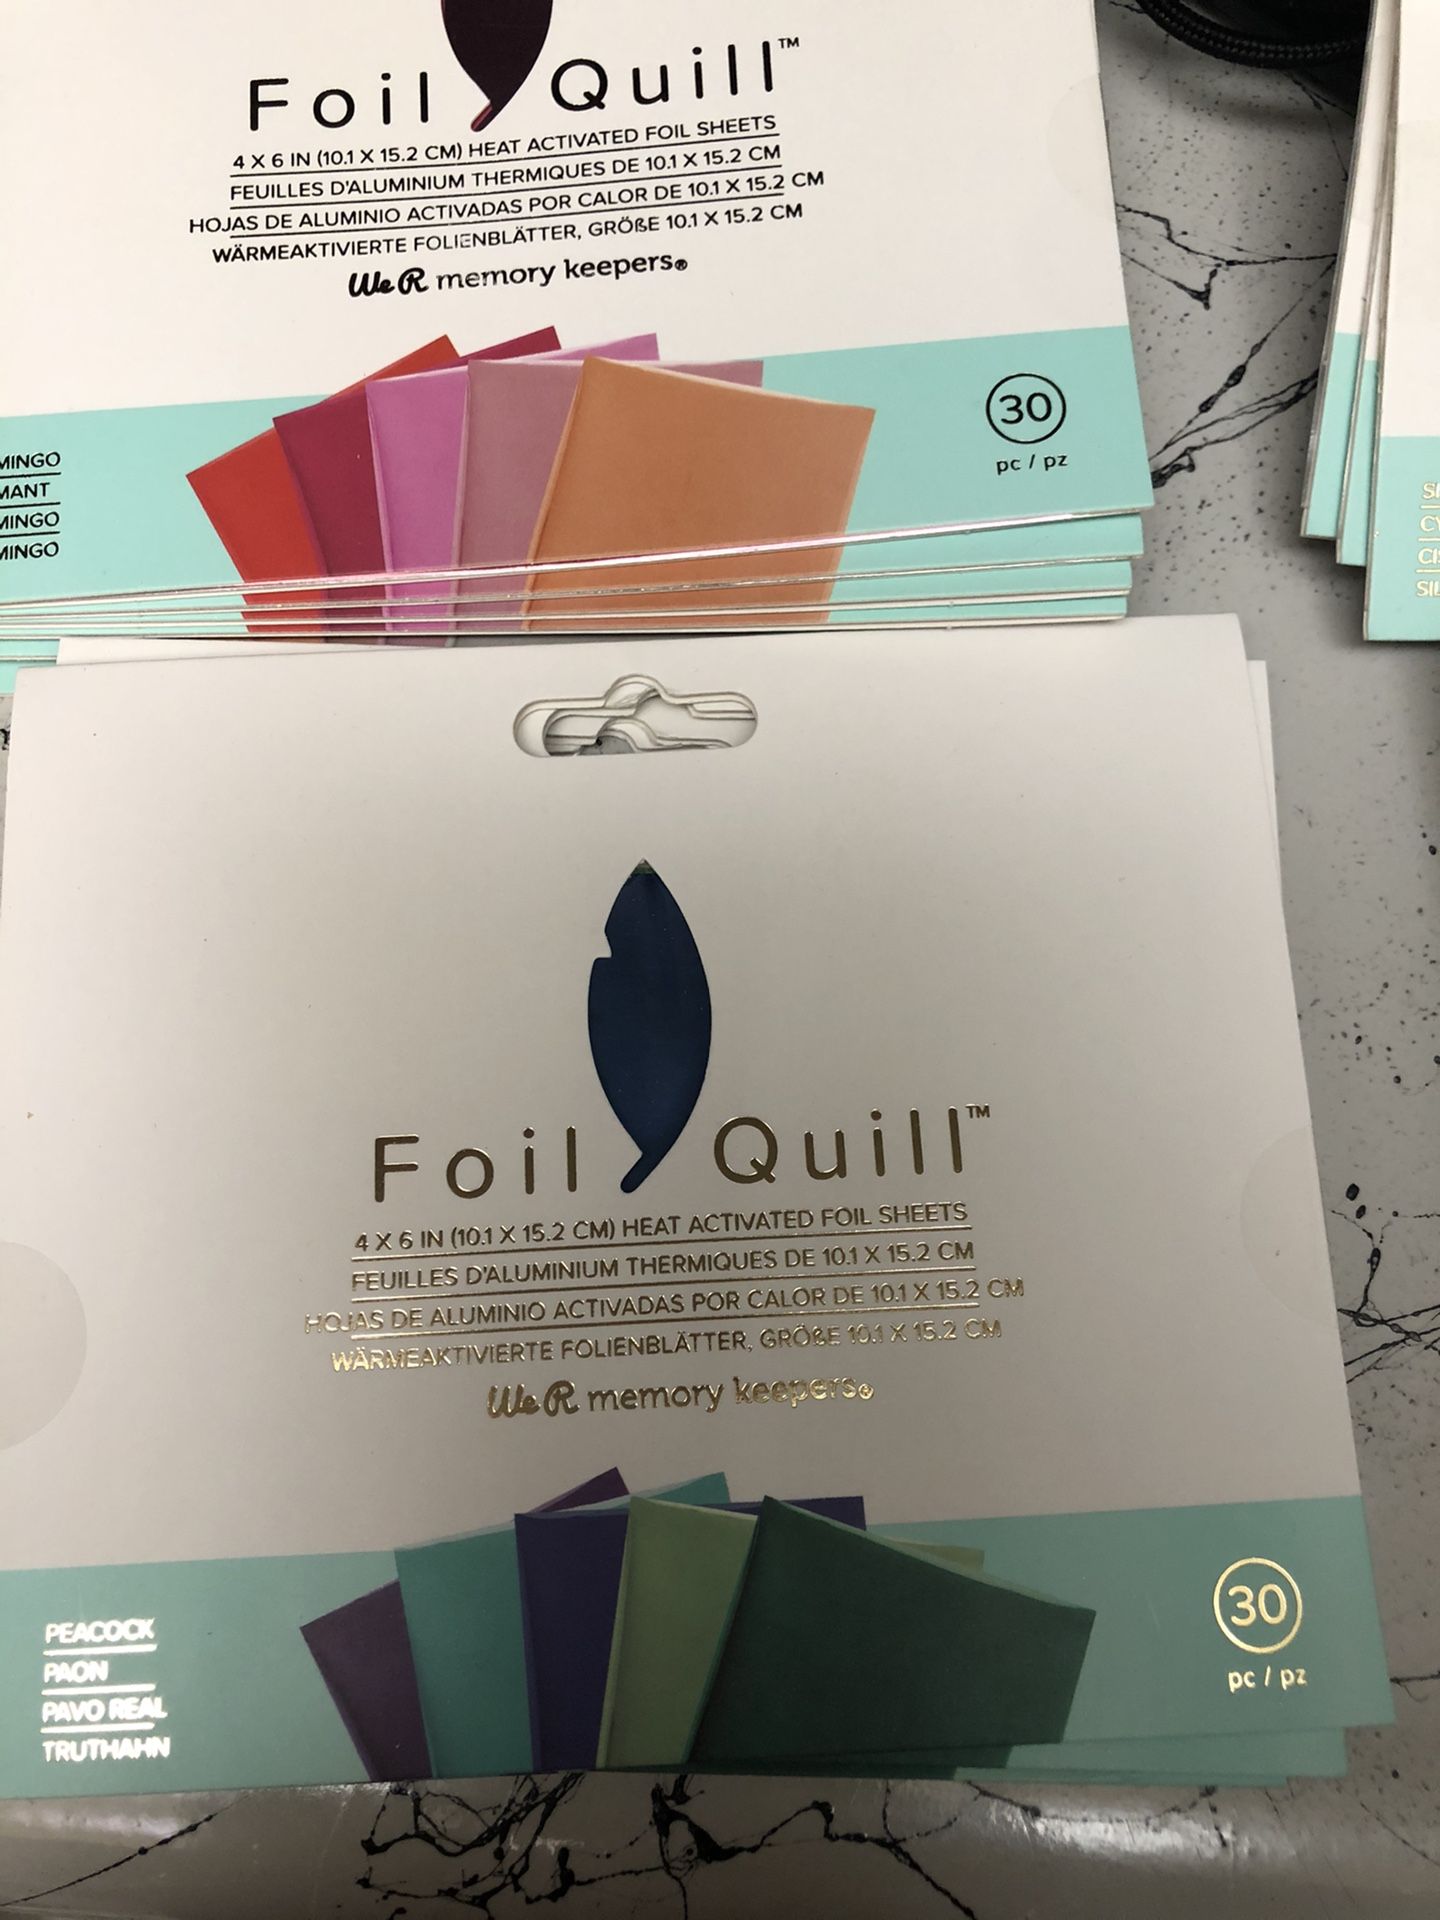 Foil quill heat foil sheets